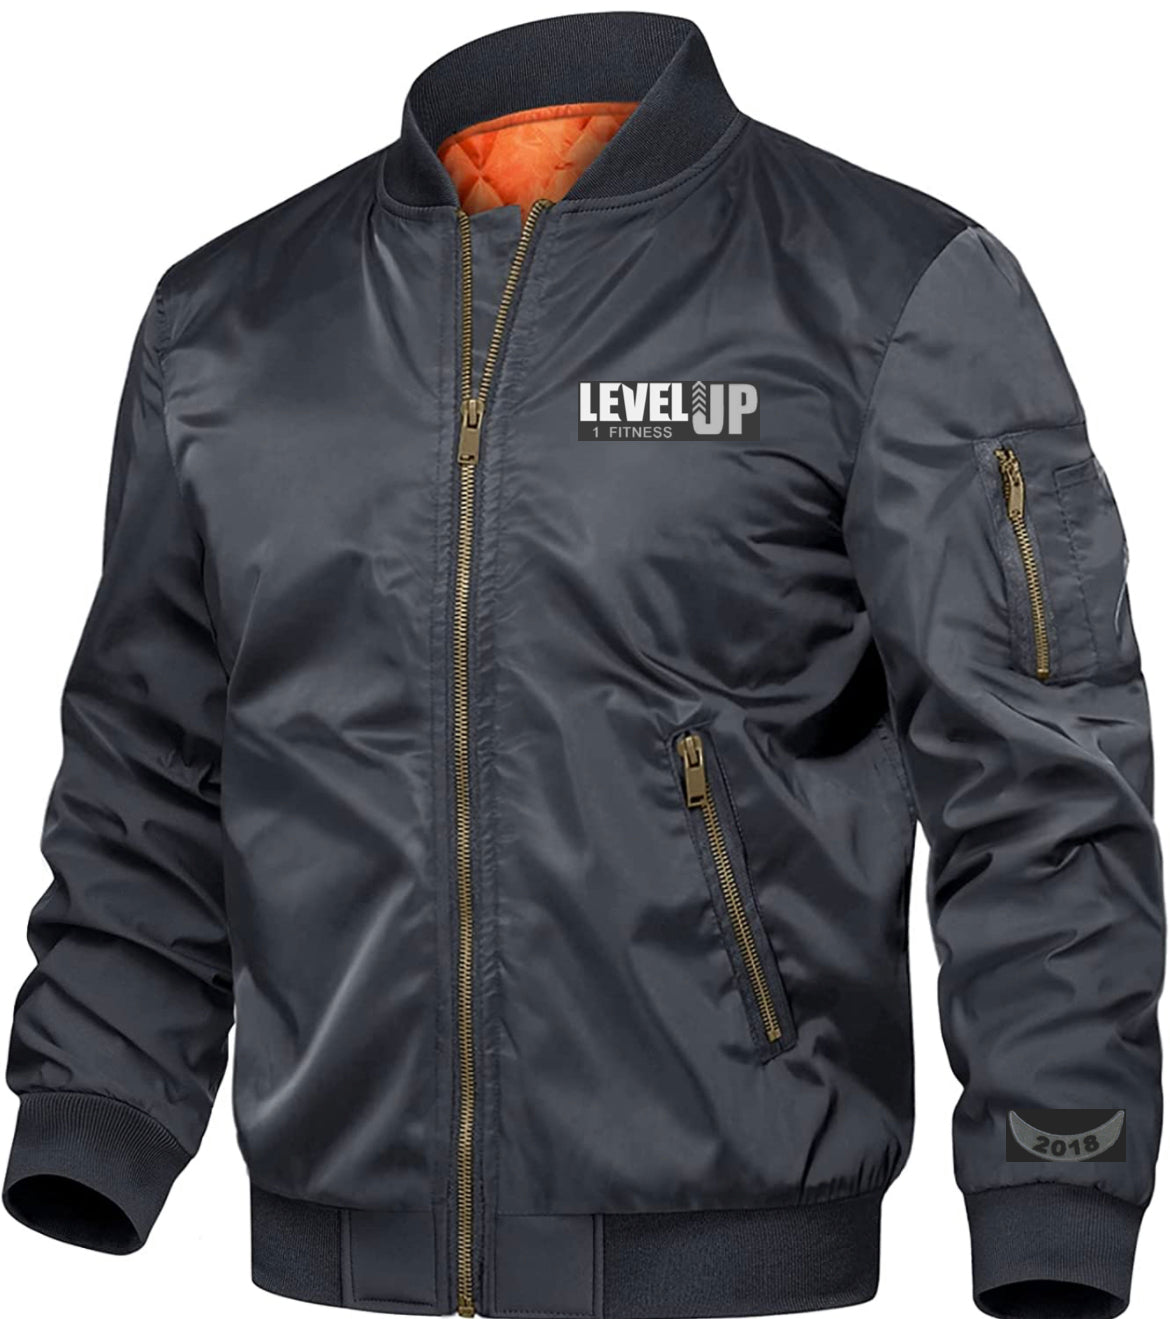 Levelup1fitness Bomber Jacket